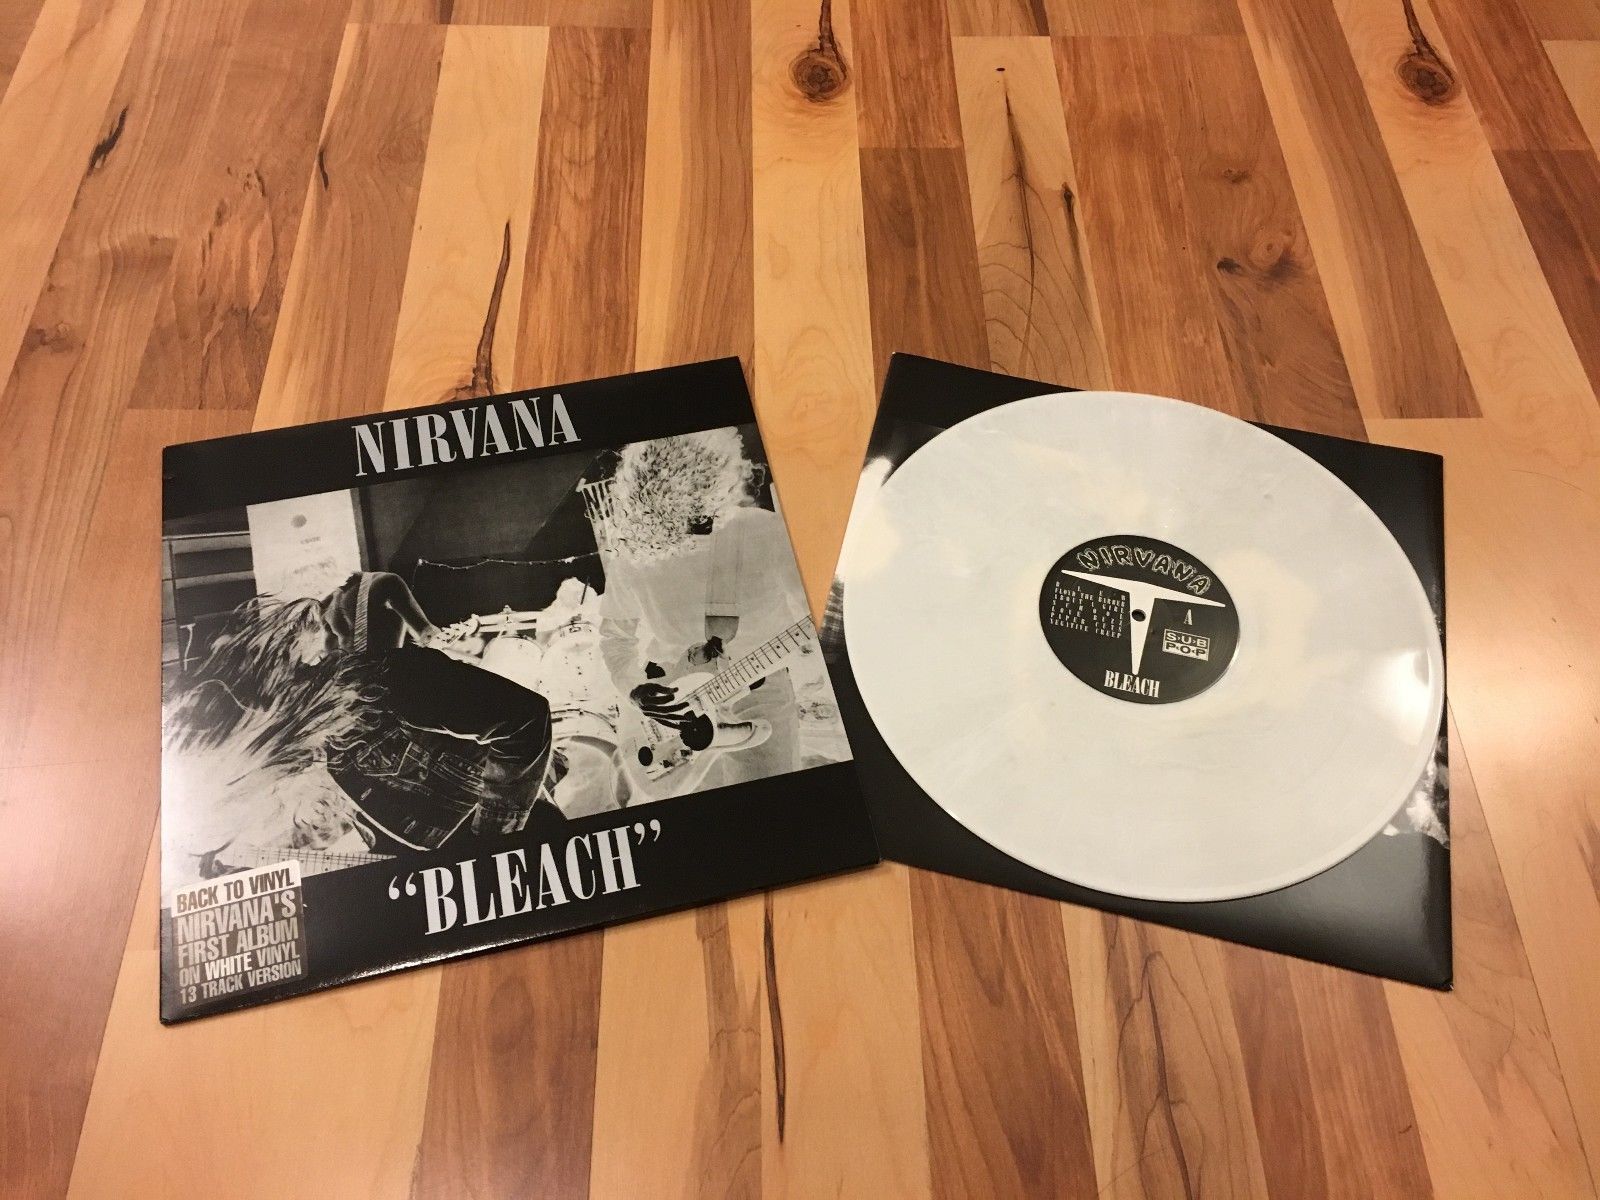 popsike.com - Nirvana Bleach White Vinyl LP Record UK Pressing 13 